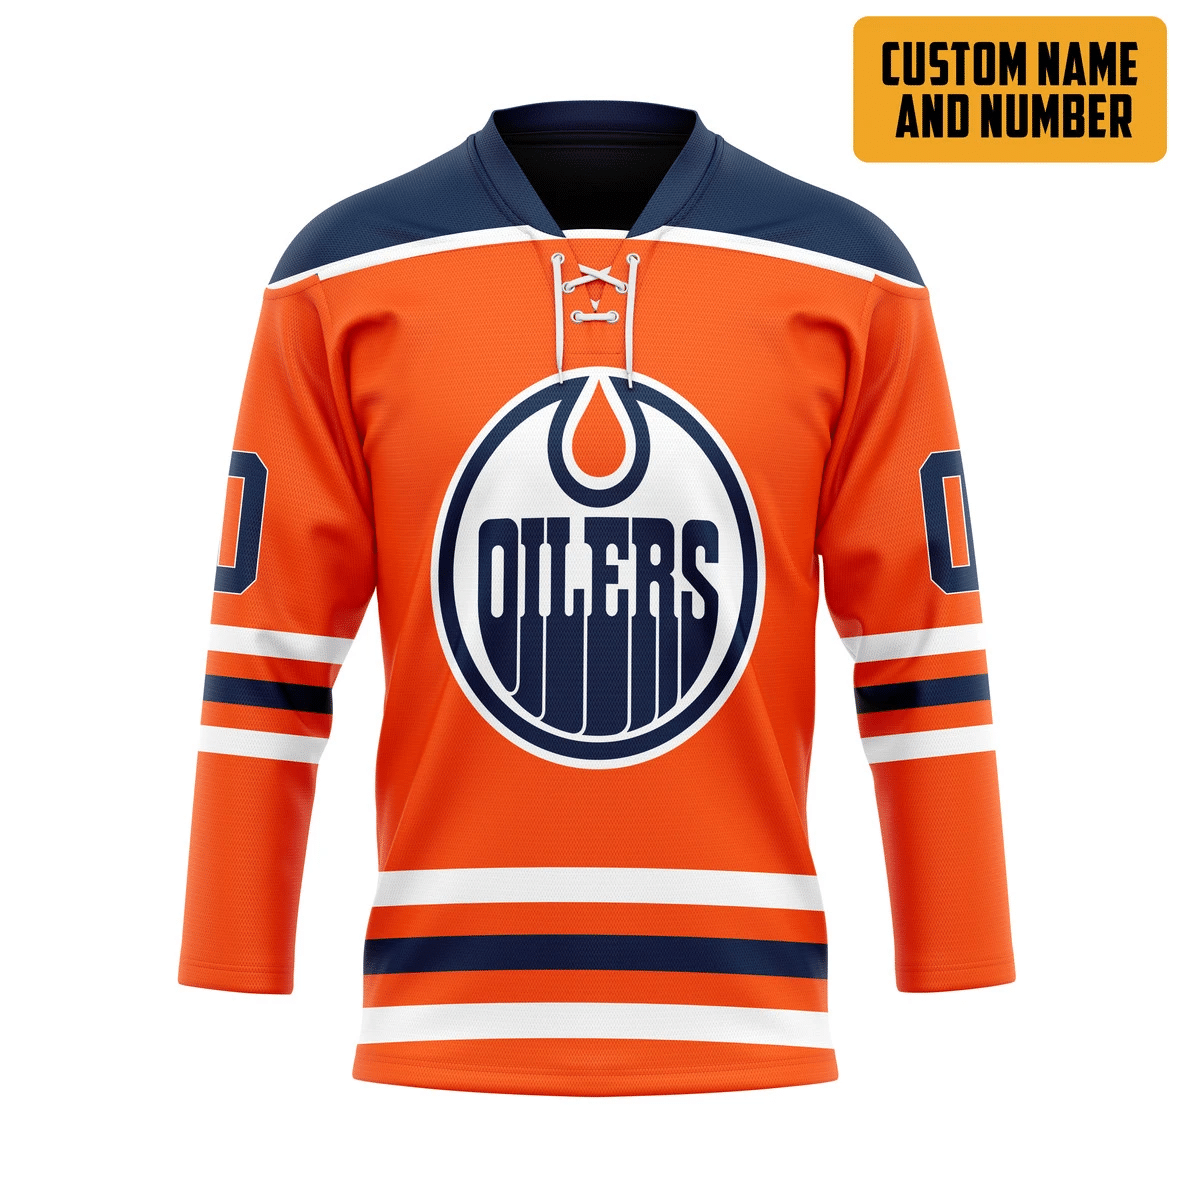 It's only $50 so don't miss out - Be sure to pick up a new hockey shirt today! 321